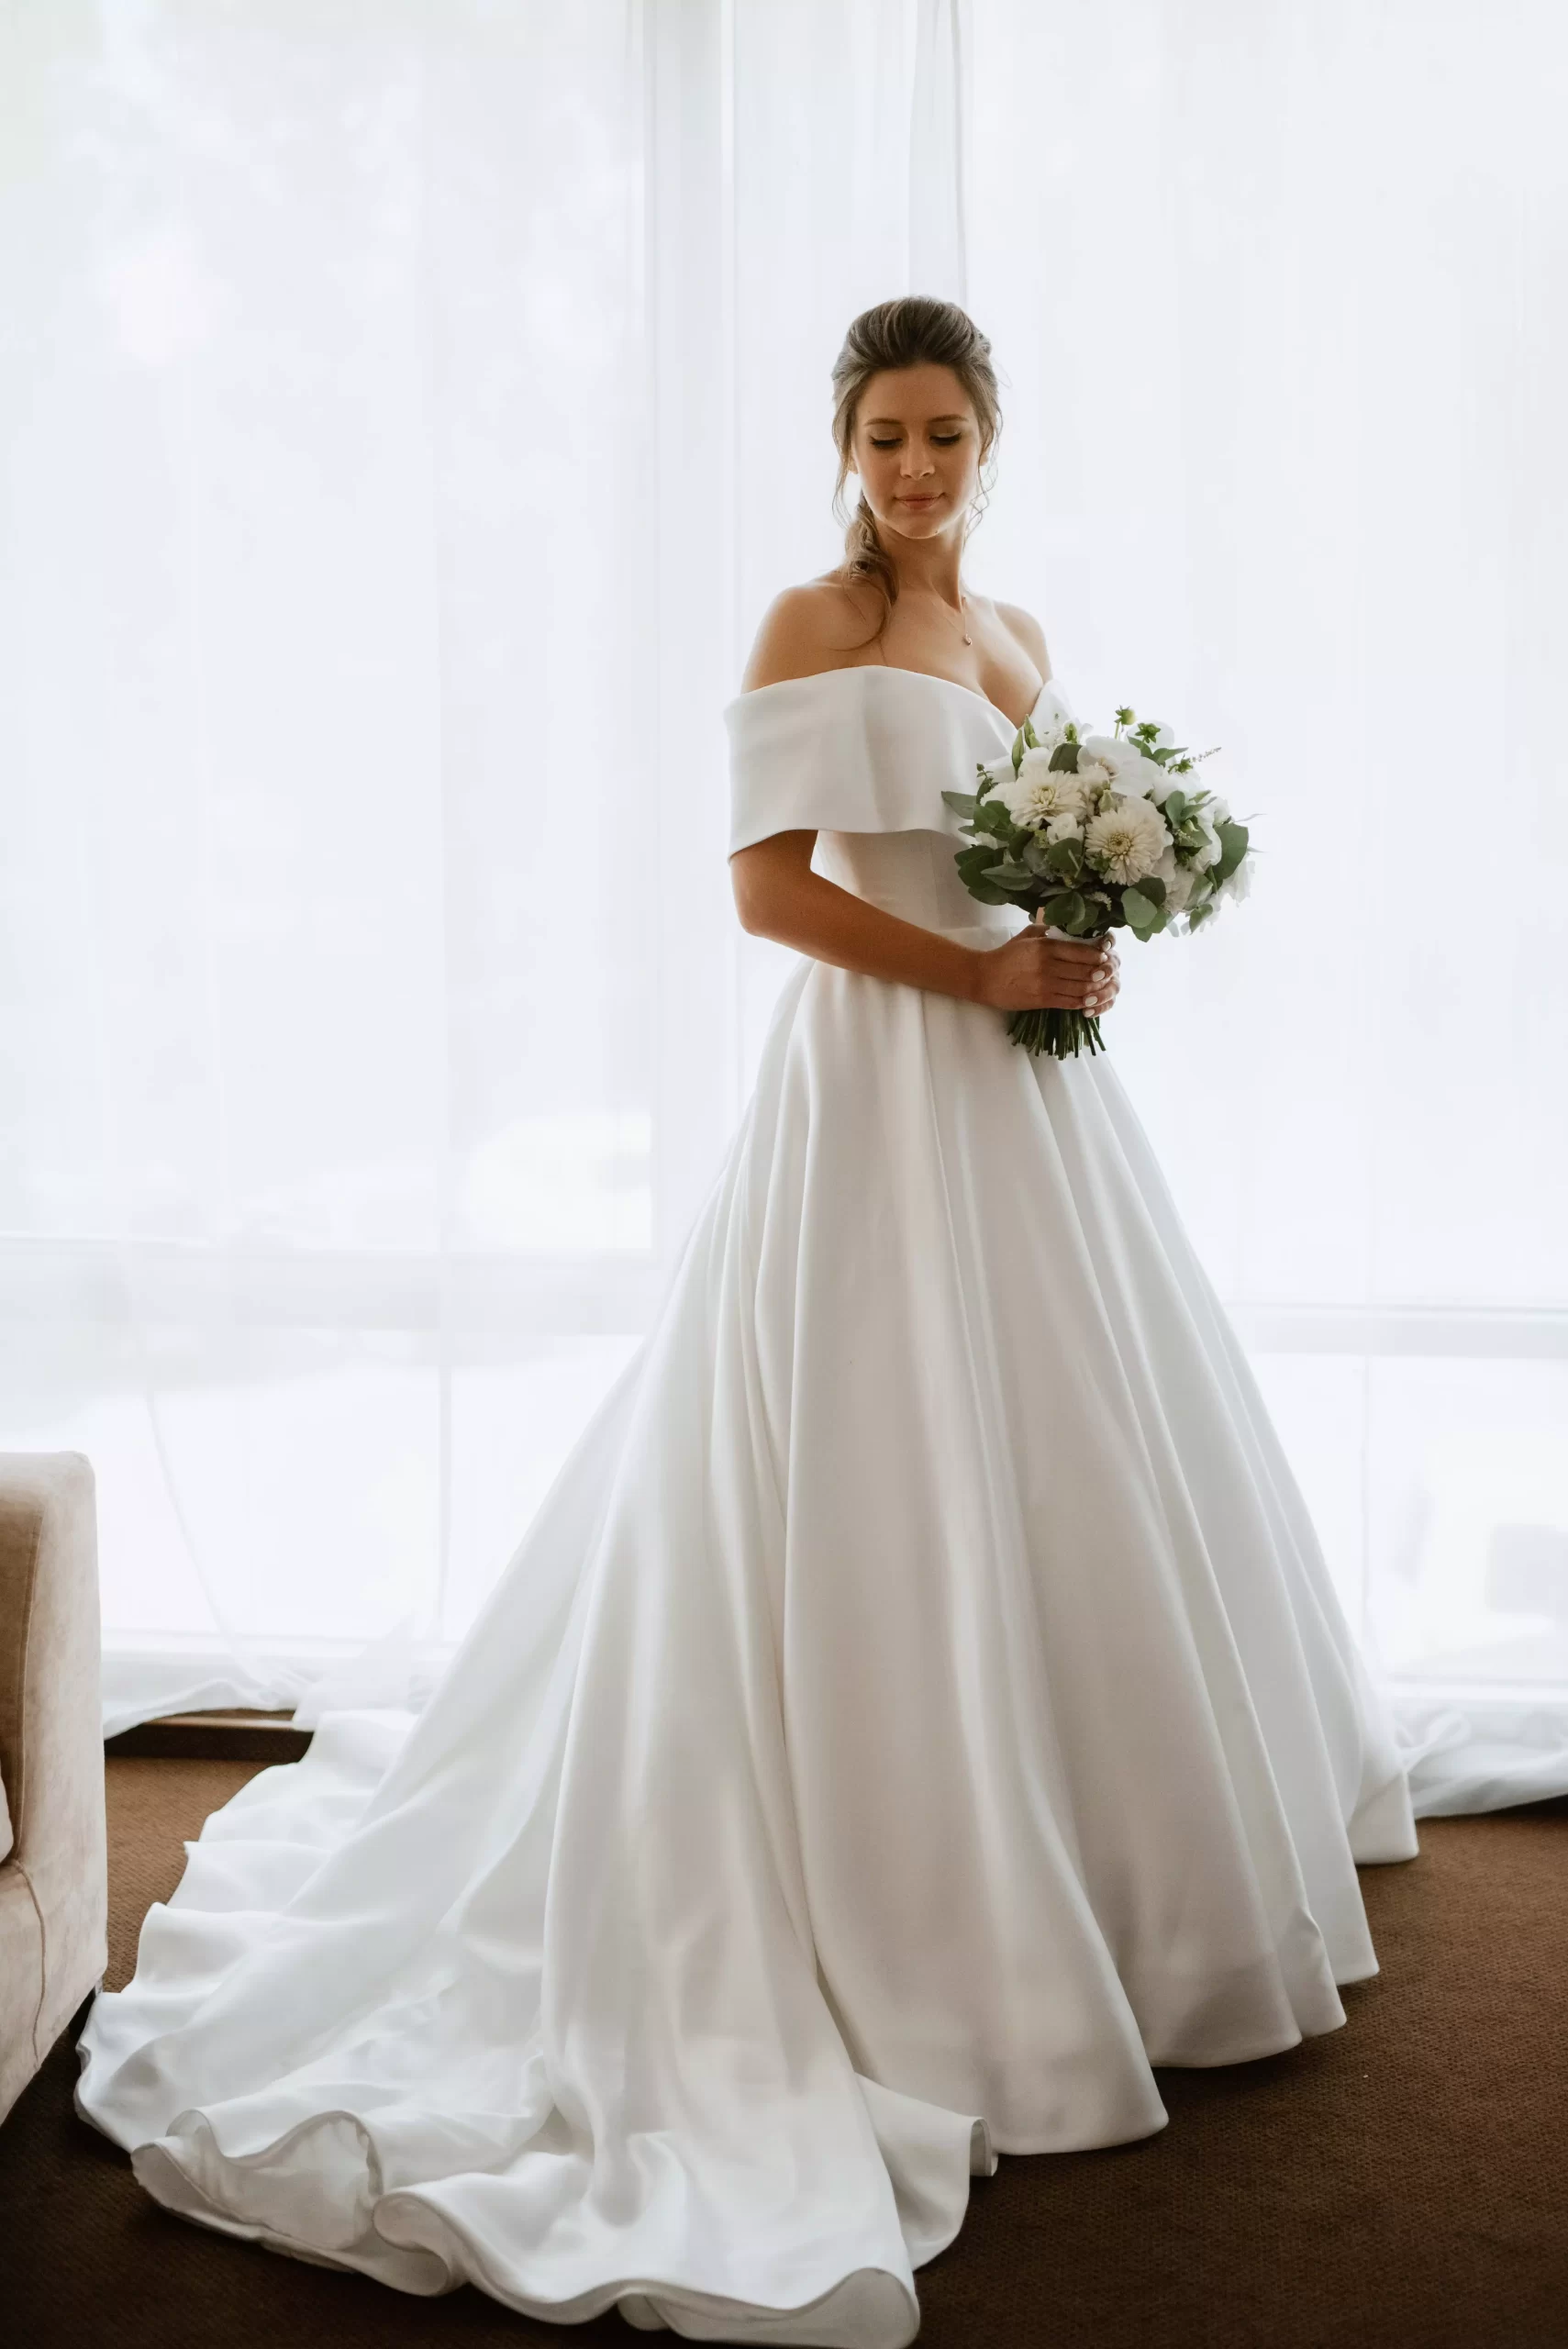 Mulher usando um vestido de noiva branco. Ela segura um buque de flores com ambas as mãos e olha levemente para baixo.